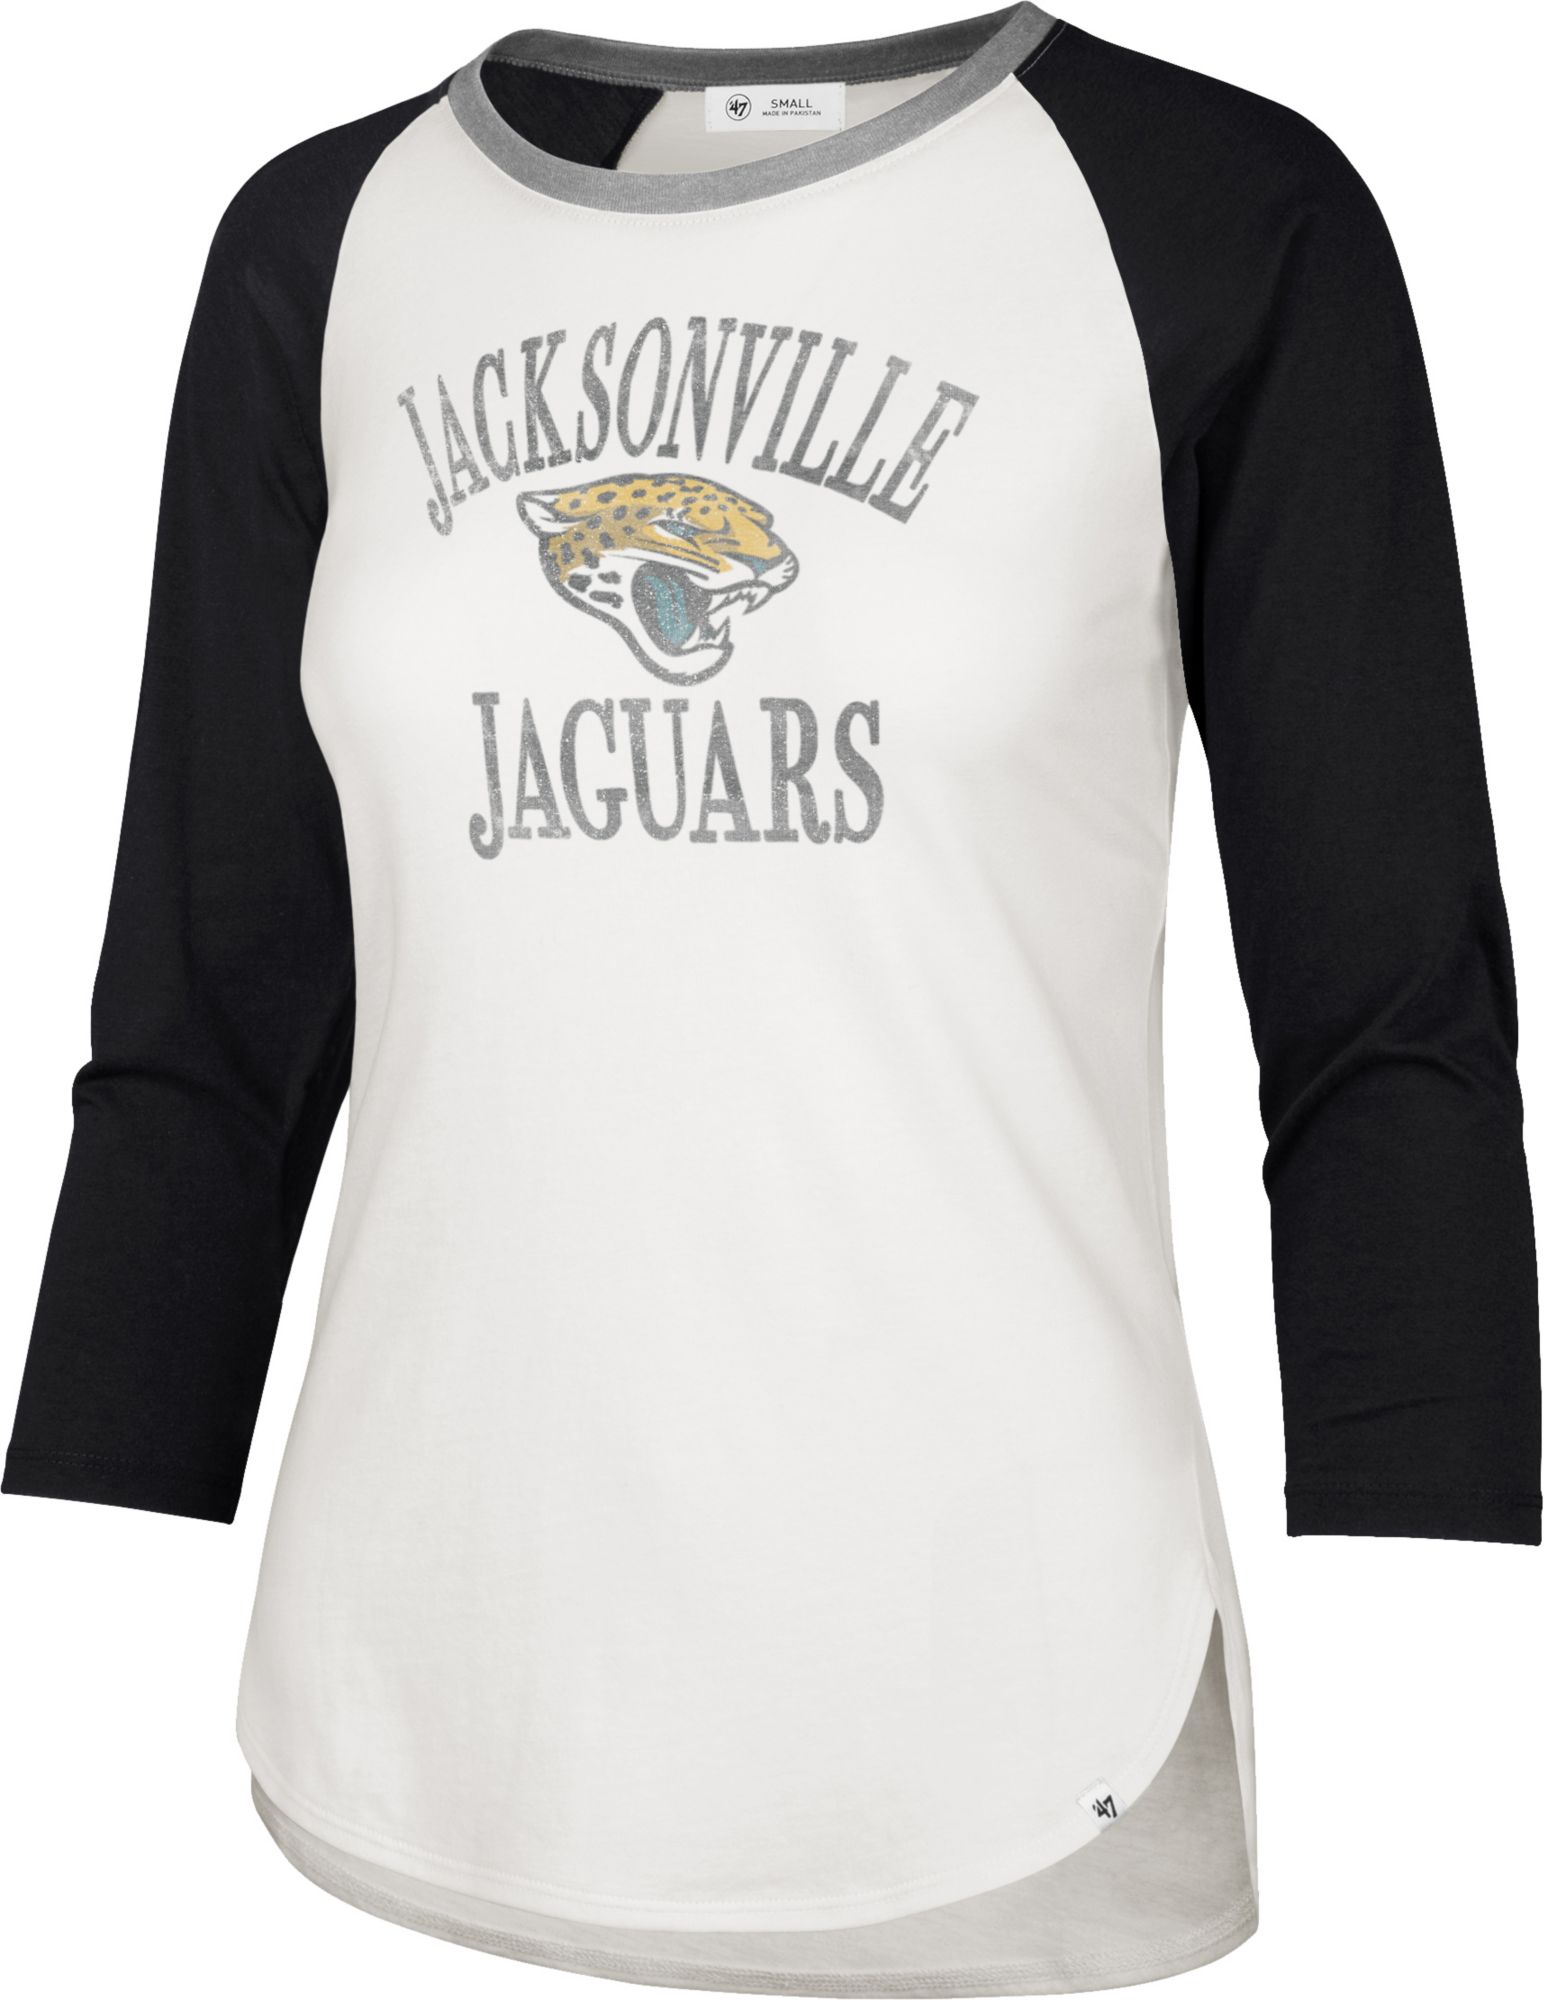 jacksonville jaguars shirt near me